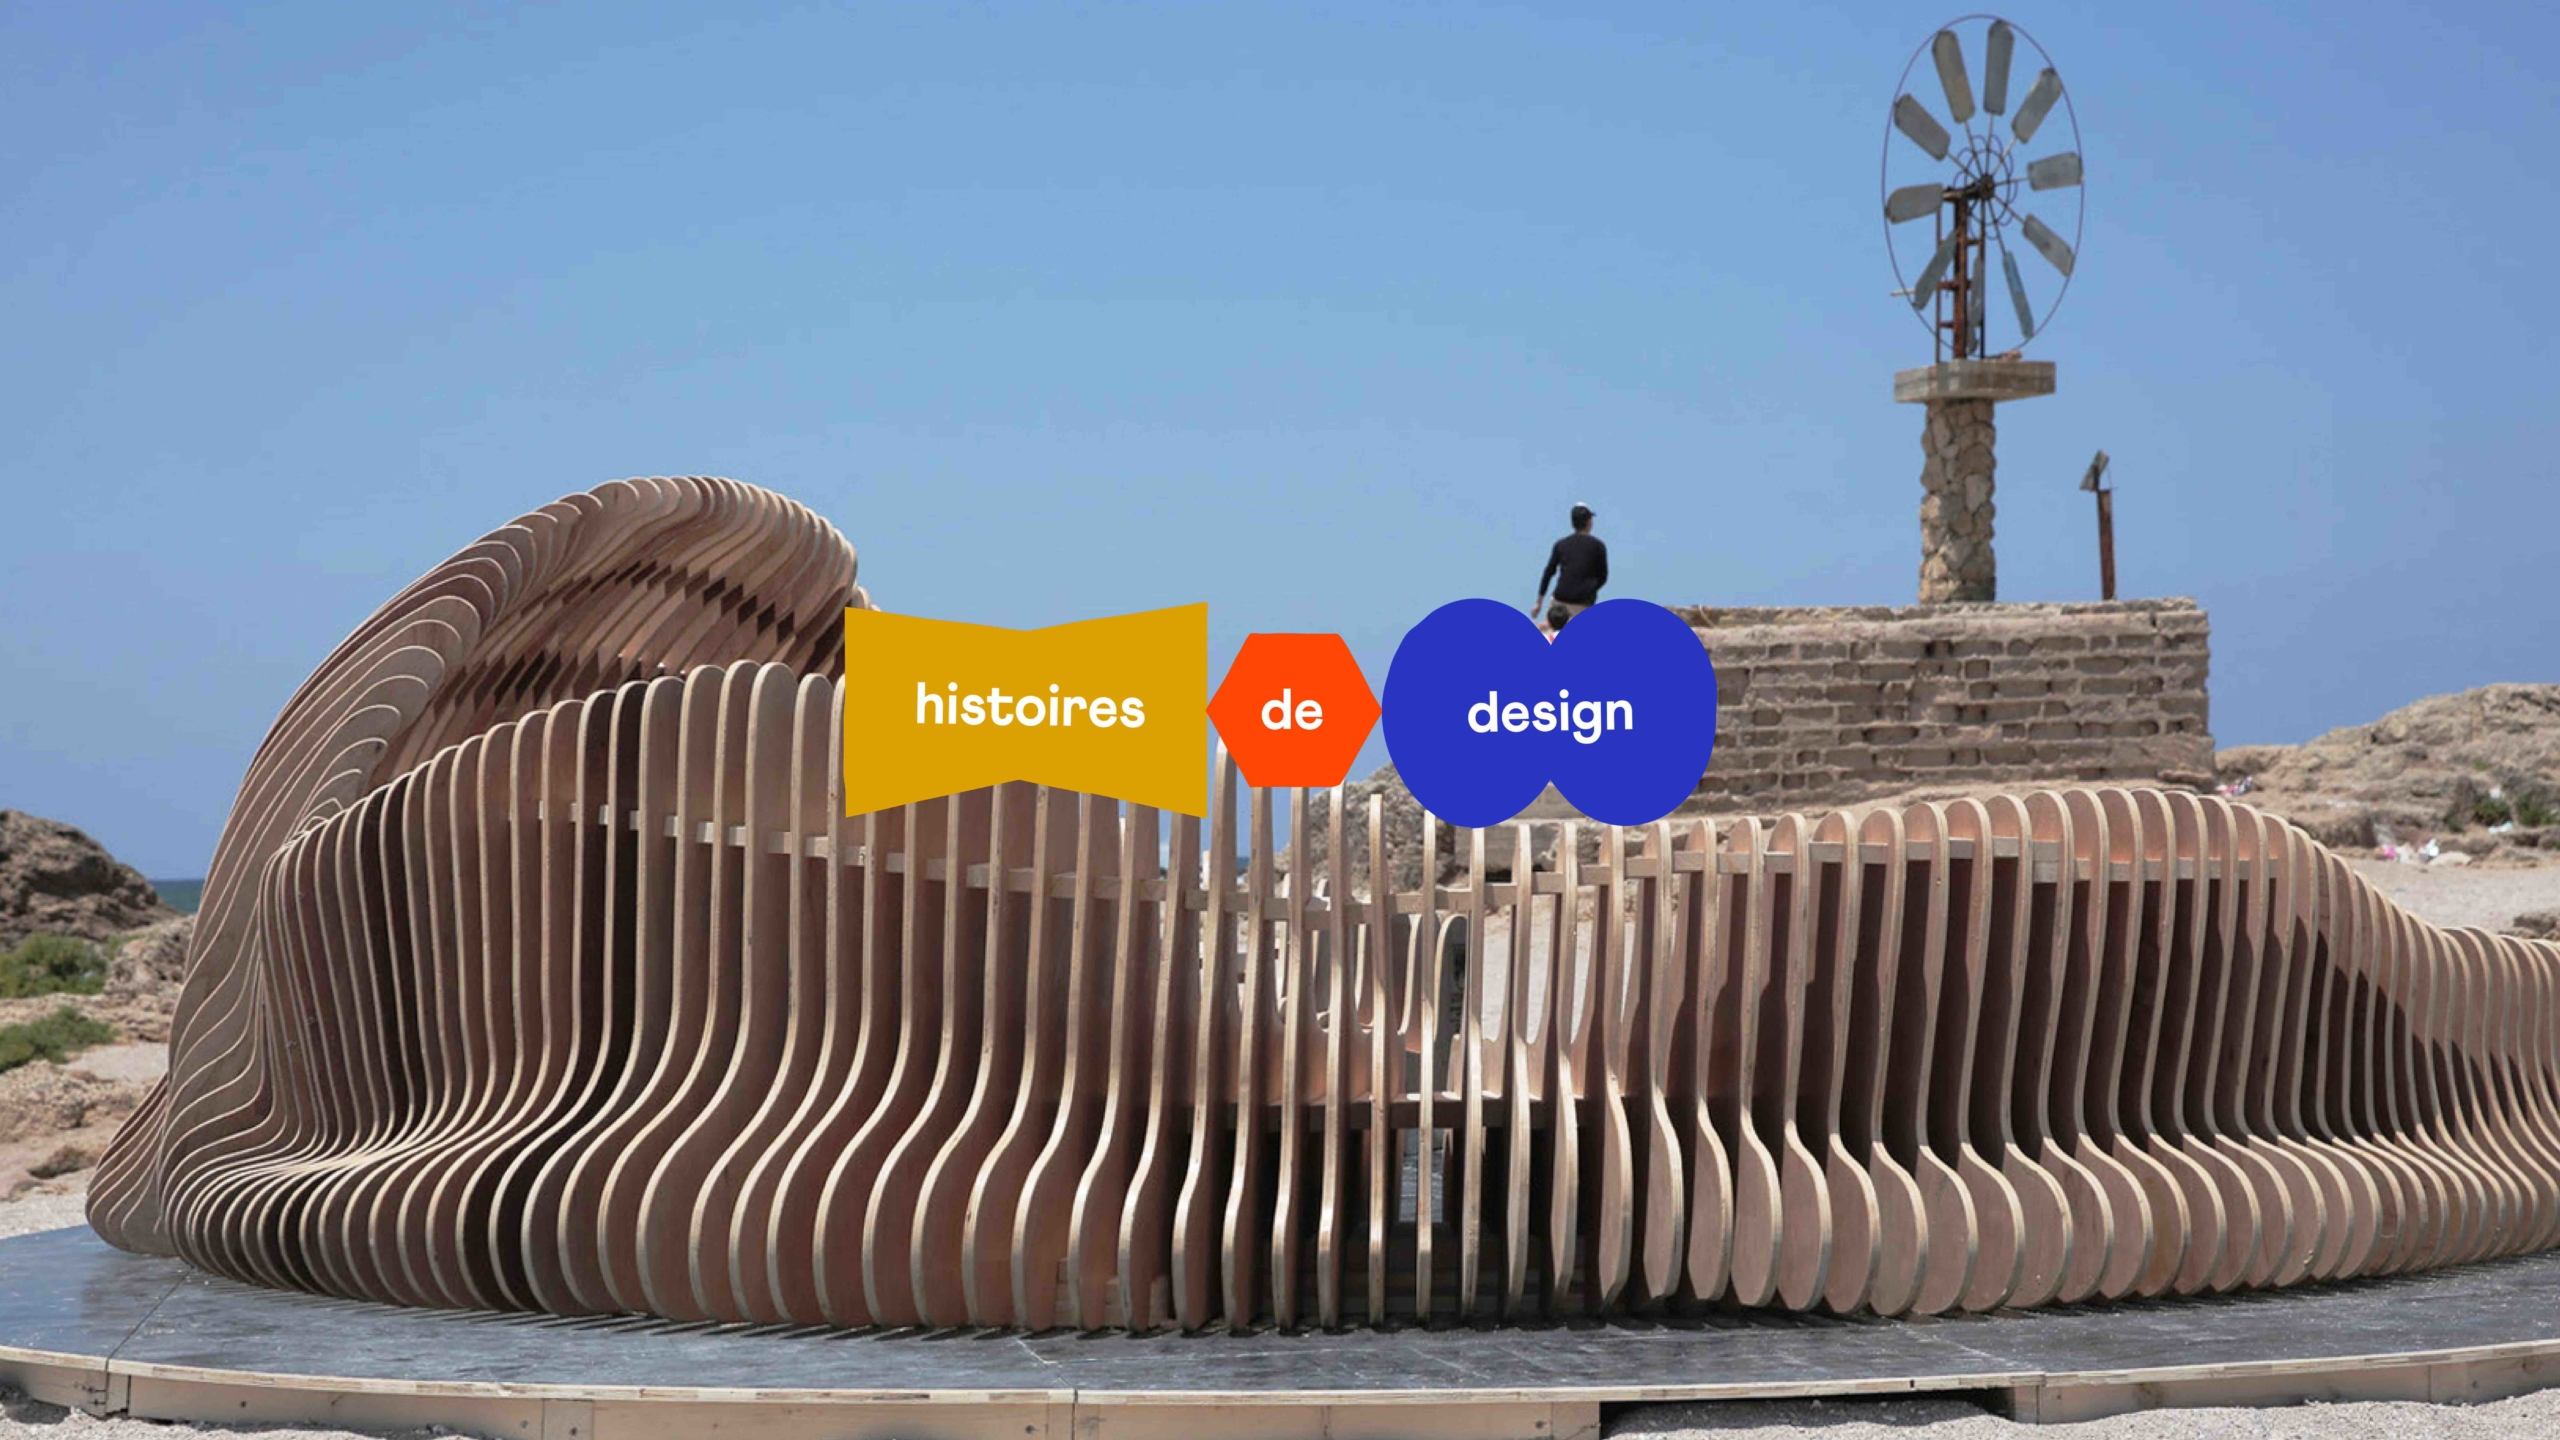 Histoires de design Ghassan Salameh